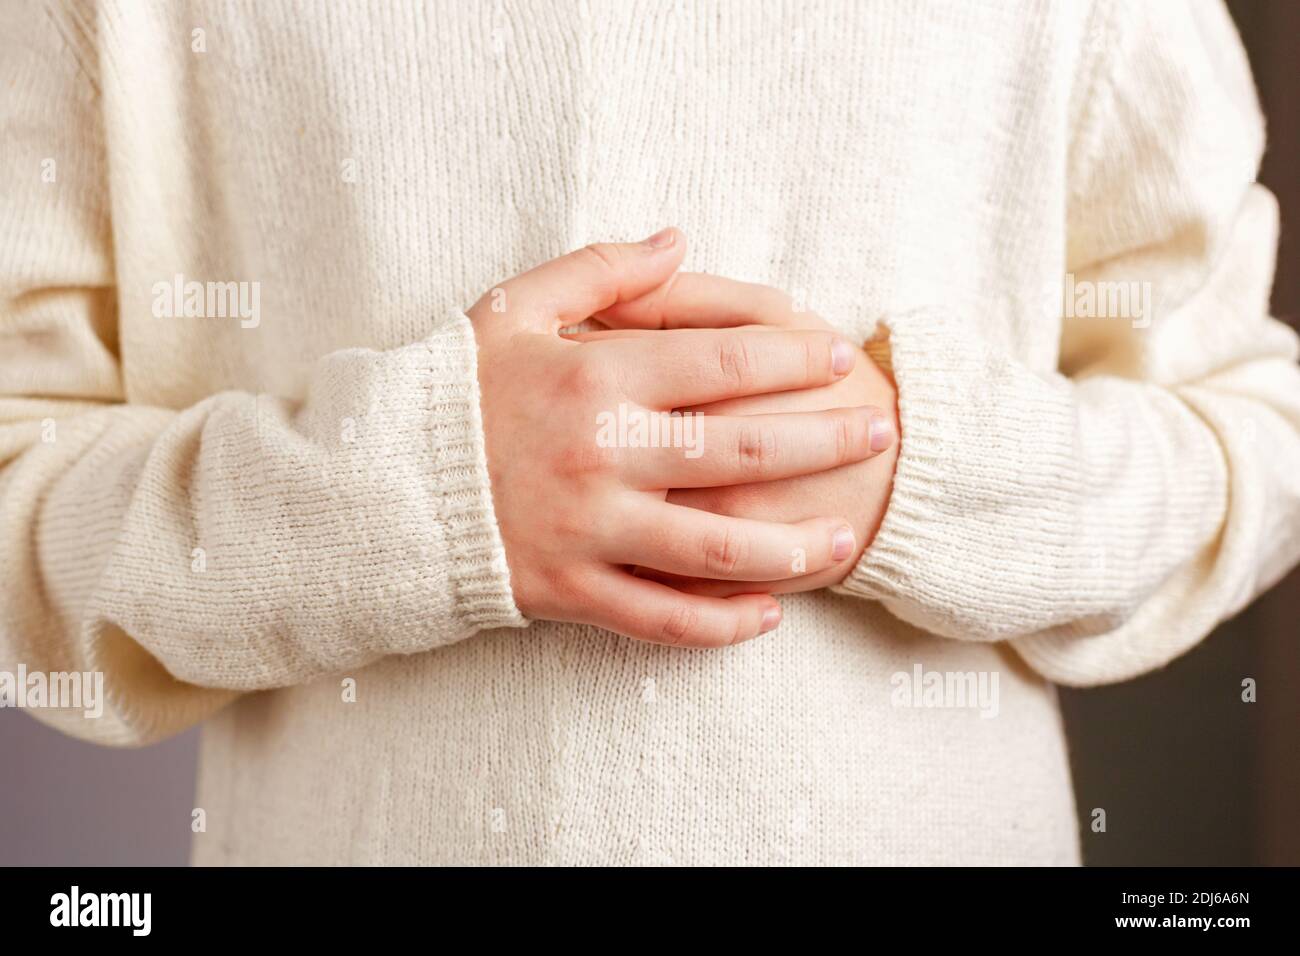 Primo piano delle mani di un bambino ripiegate sullo stomaco in un maglione lavorato a maglia leggera color champagne. Foto Stock